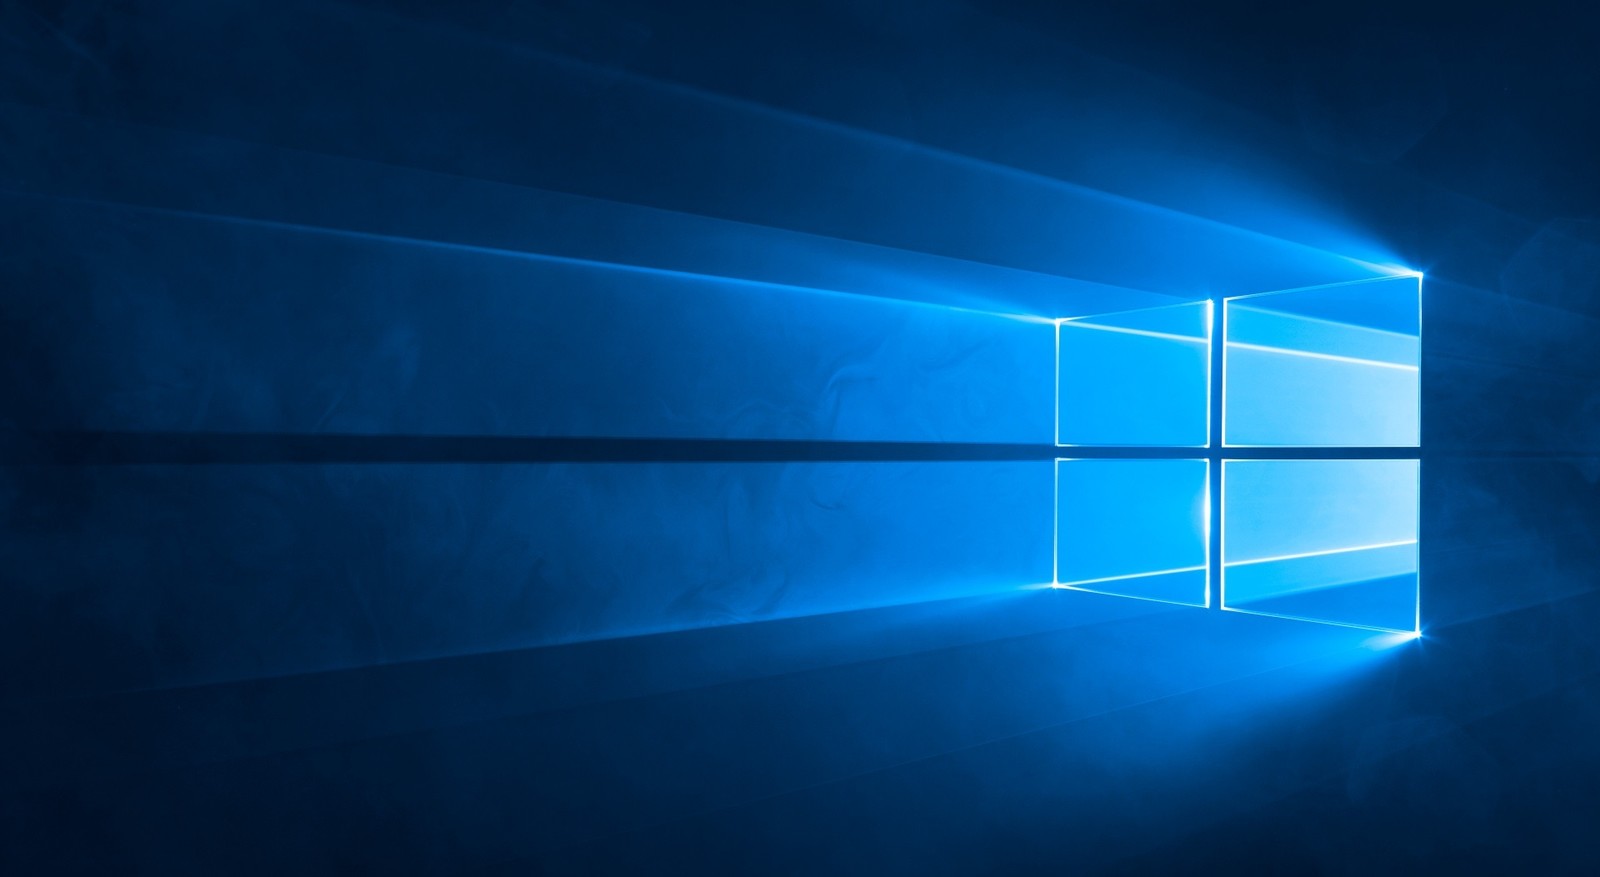 Windows 10 19H1: 7 крупных изменений и функций будущего обновления